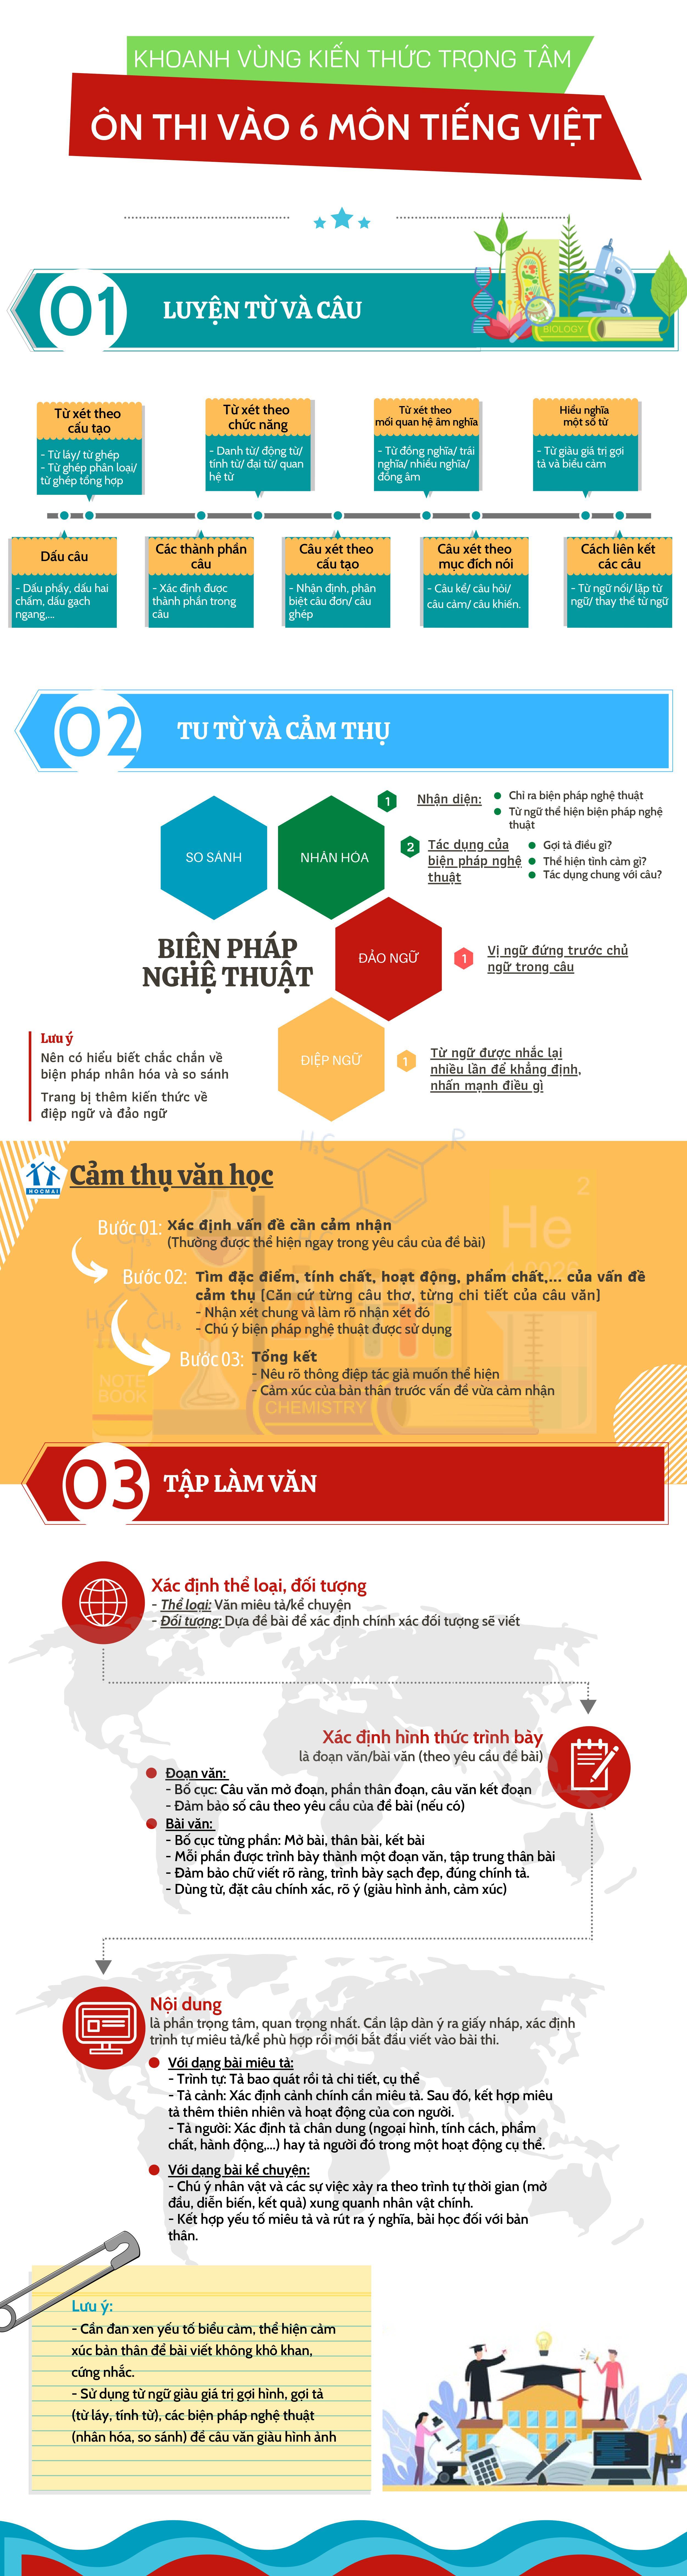 đề thi vào lớp 6 môn Tiếng Việt